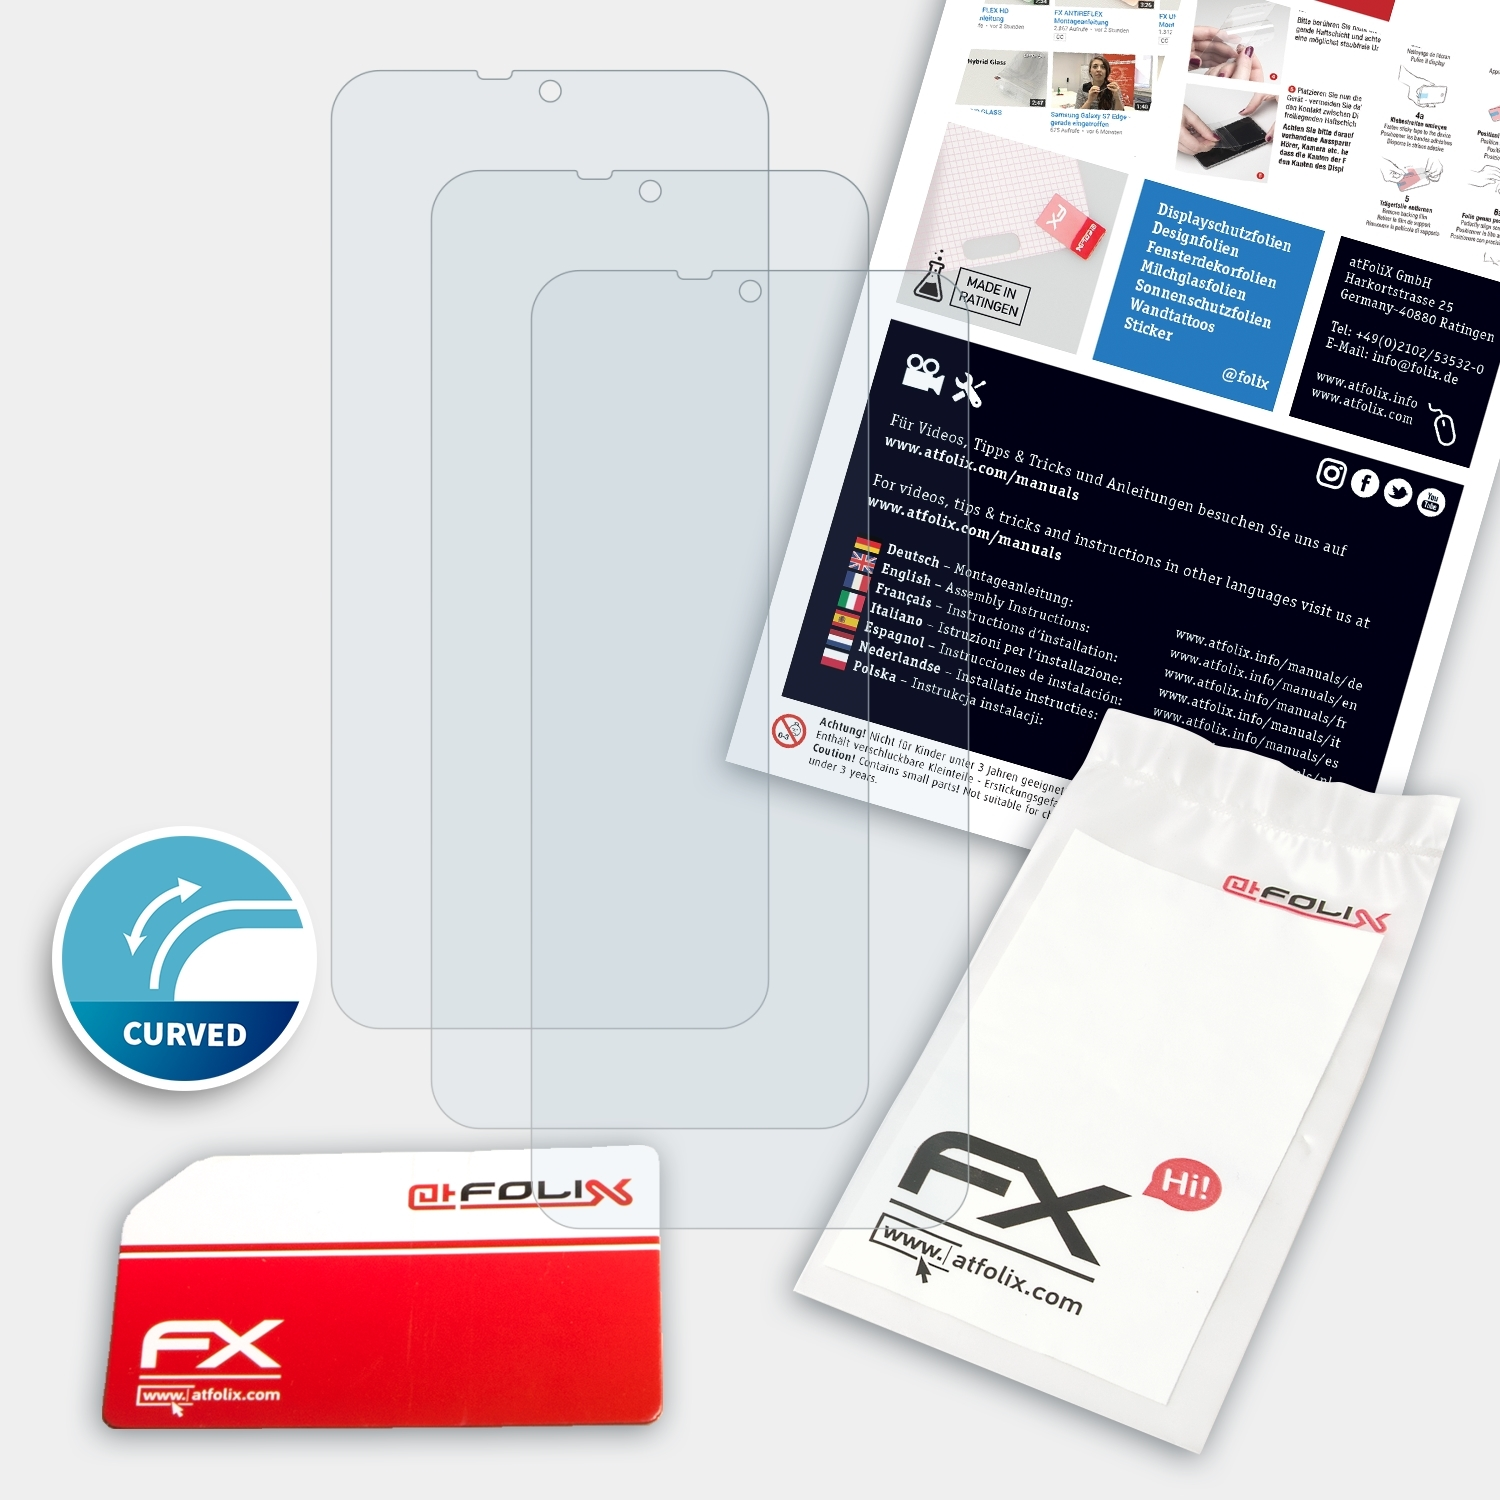 ATFOLIX 3x Displayschutz(für Ulefone 6P) Note FX-ActiFleX